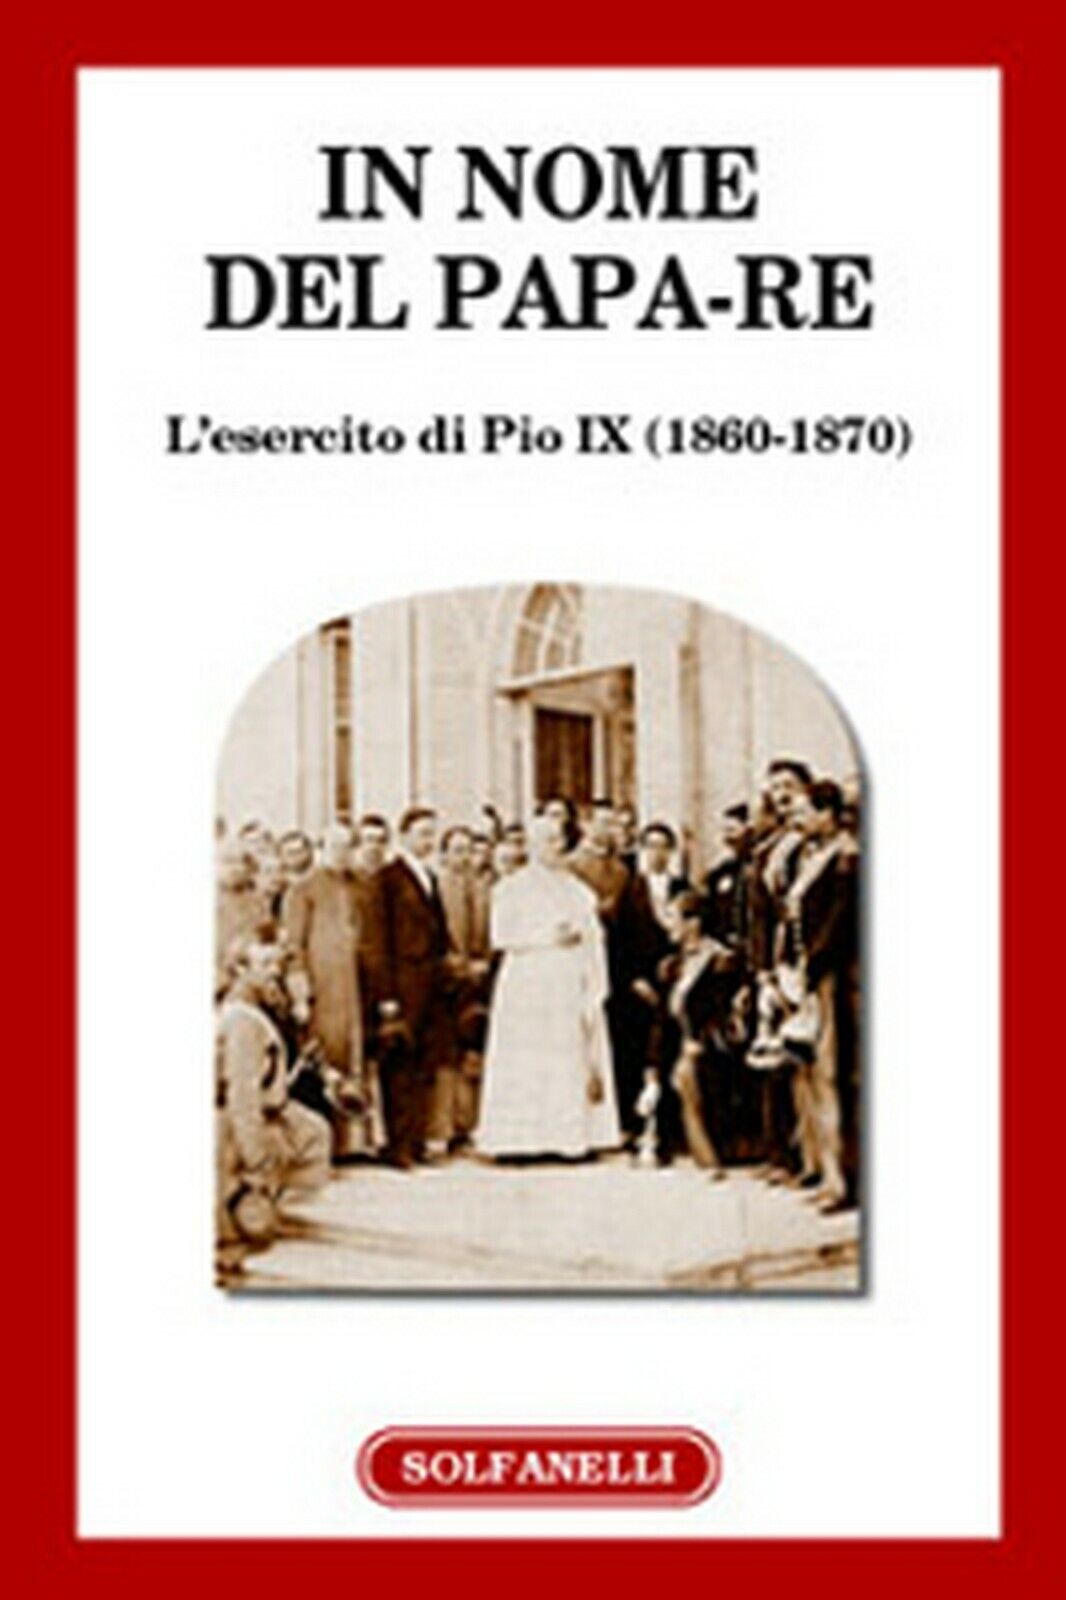 IN NOME DEL PAPA-RE L'esercito di Pio IX (1860-1870), Centro Studi G. Federici